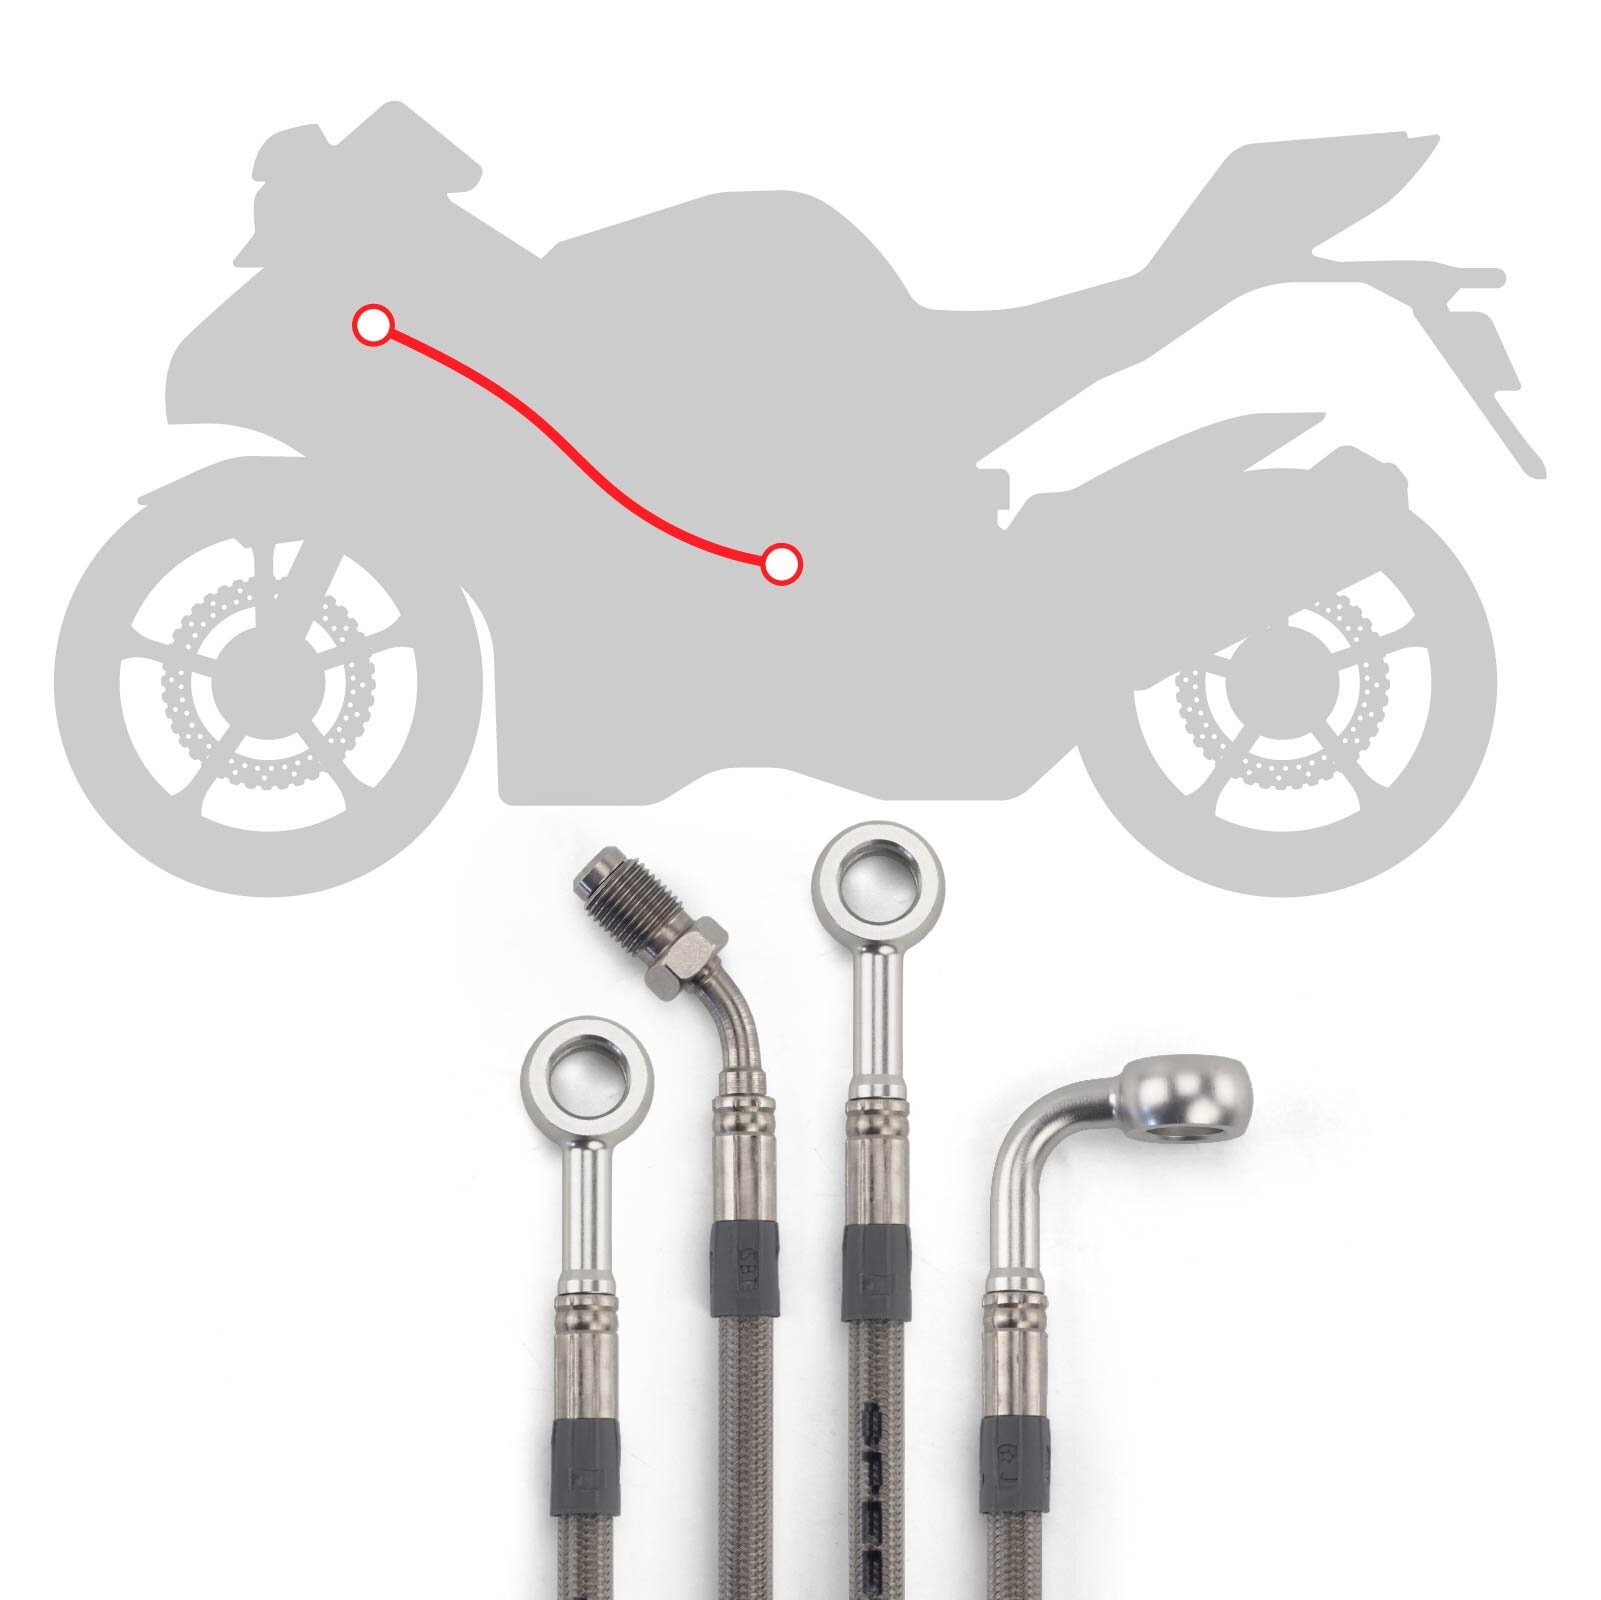 Stahlflex Bremsleitungs Kit mit silbernen Fittings und Leitungen mit transparenter Ummantelung, Infografik für die Verlegung der Kupplungsleitung